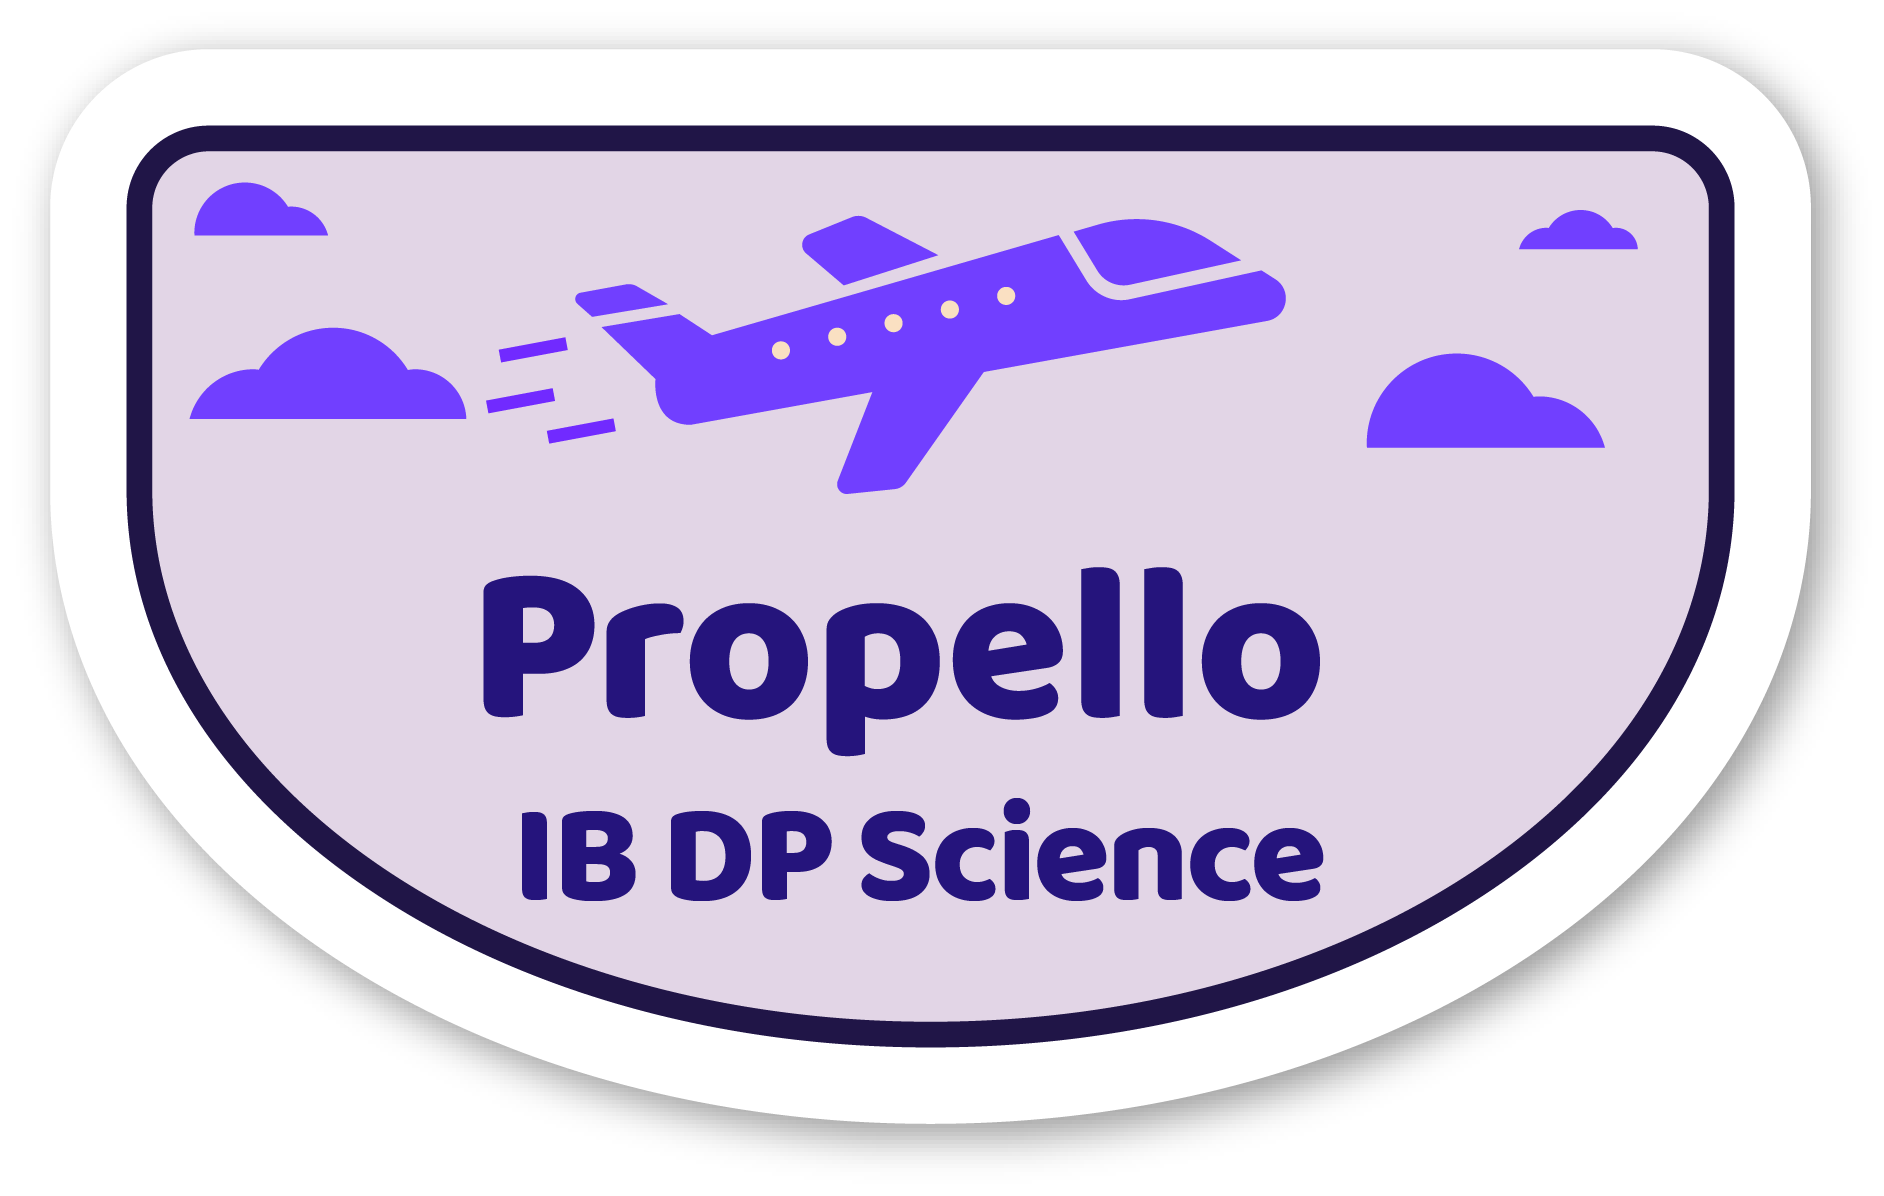 Image representing Propello's IB DP Science Curriculum